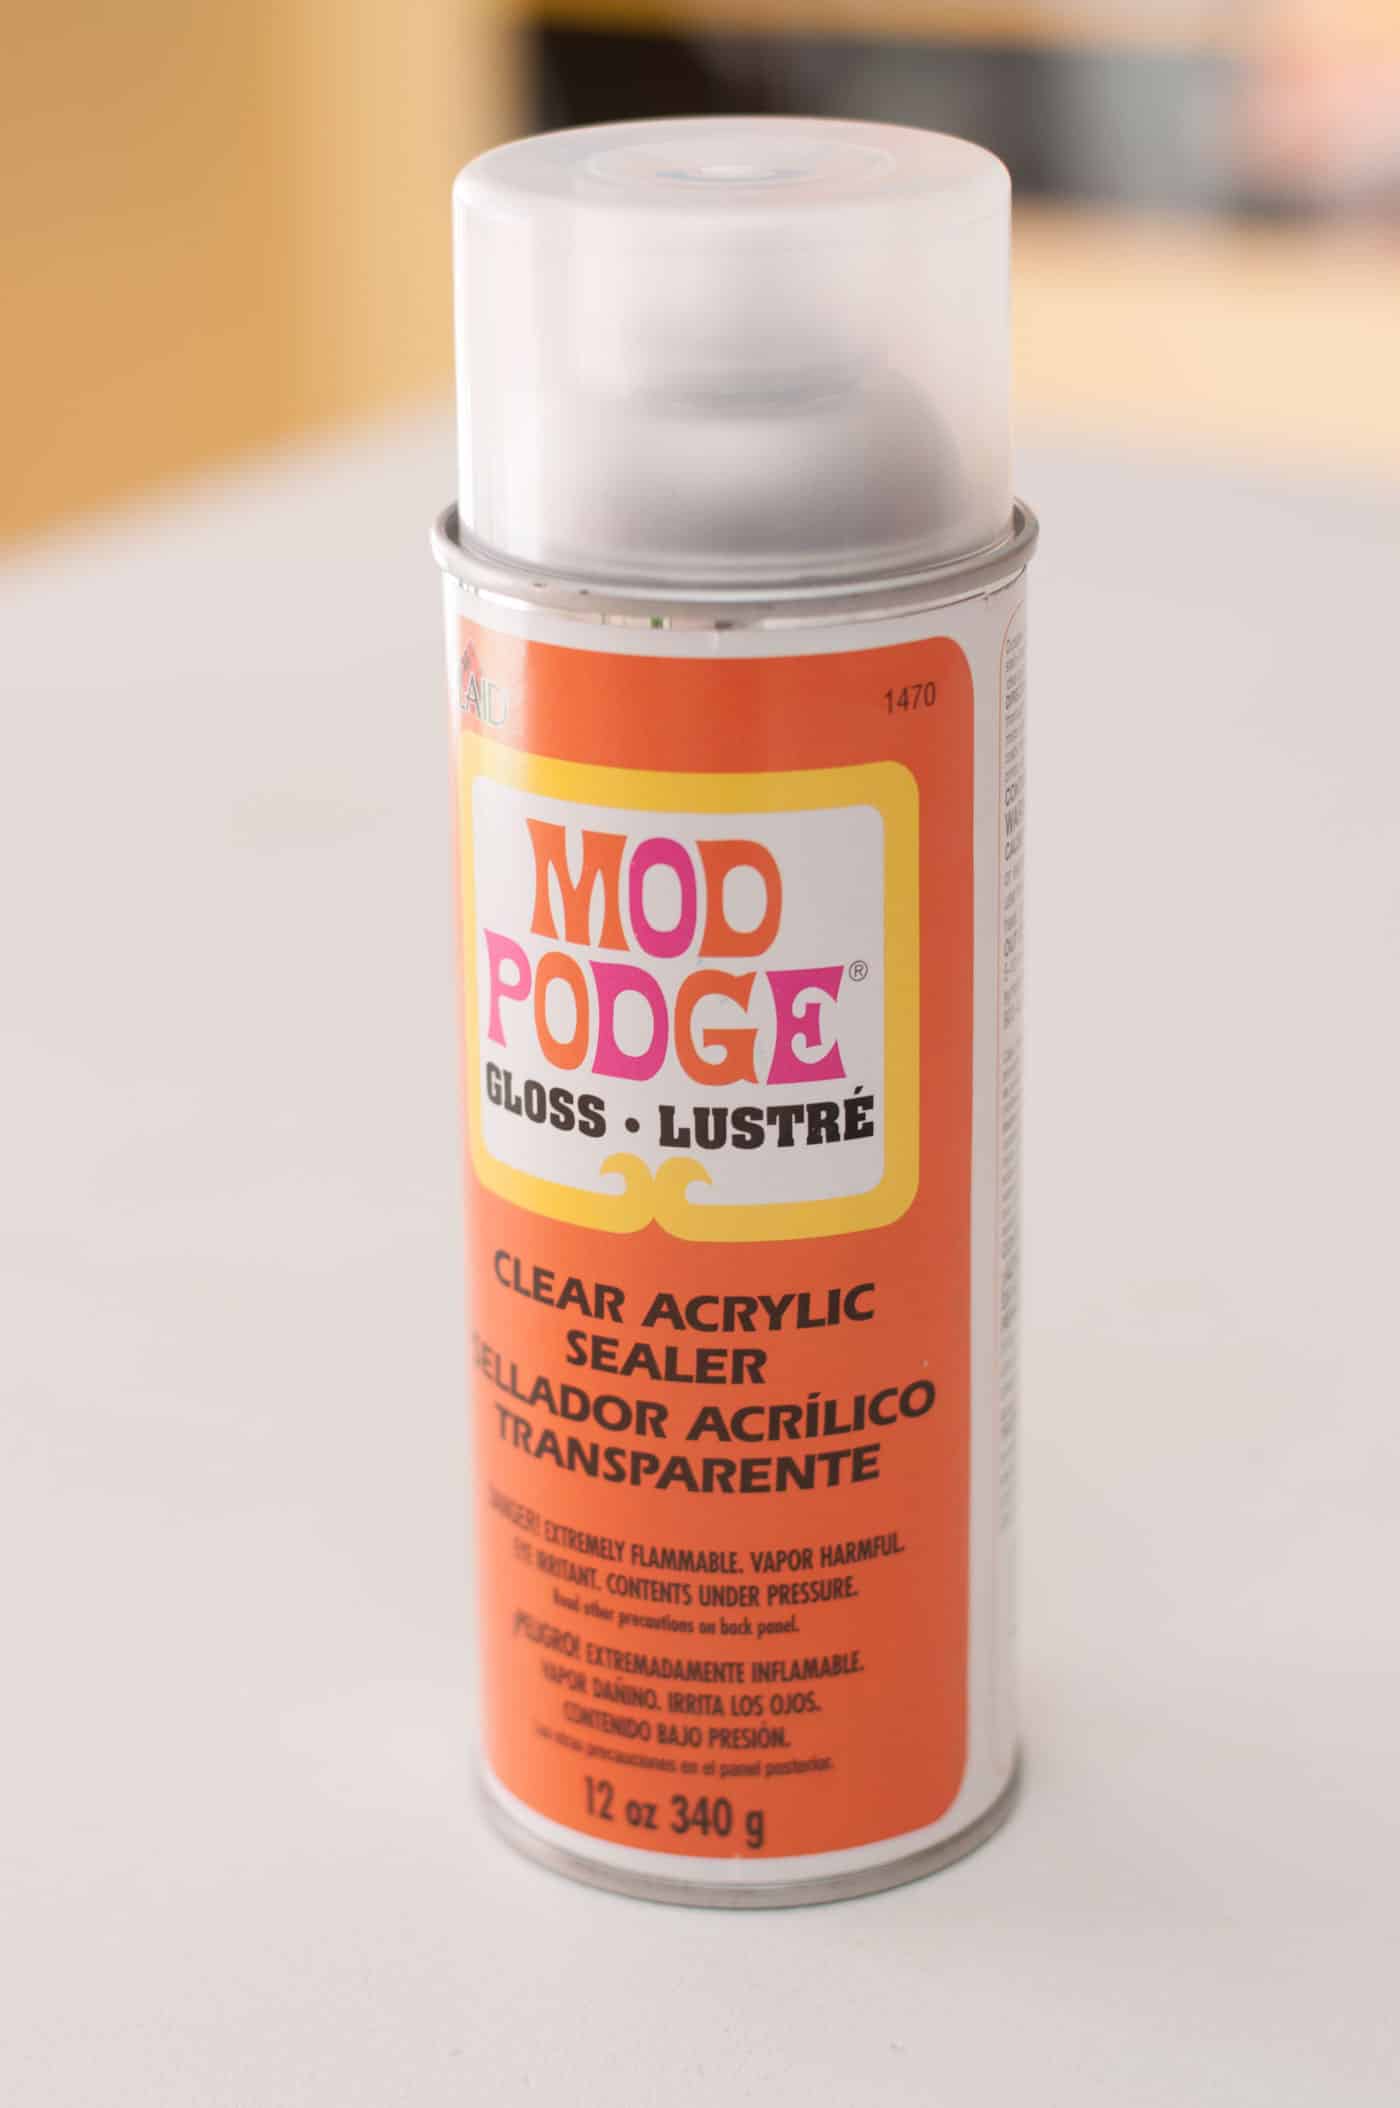 Mod Podge clear acrylic sealer Gloss